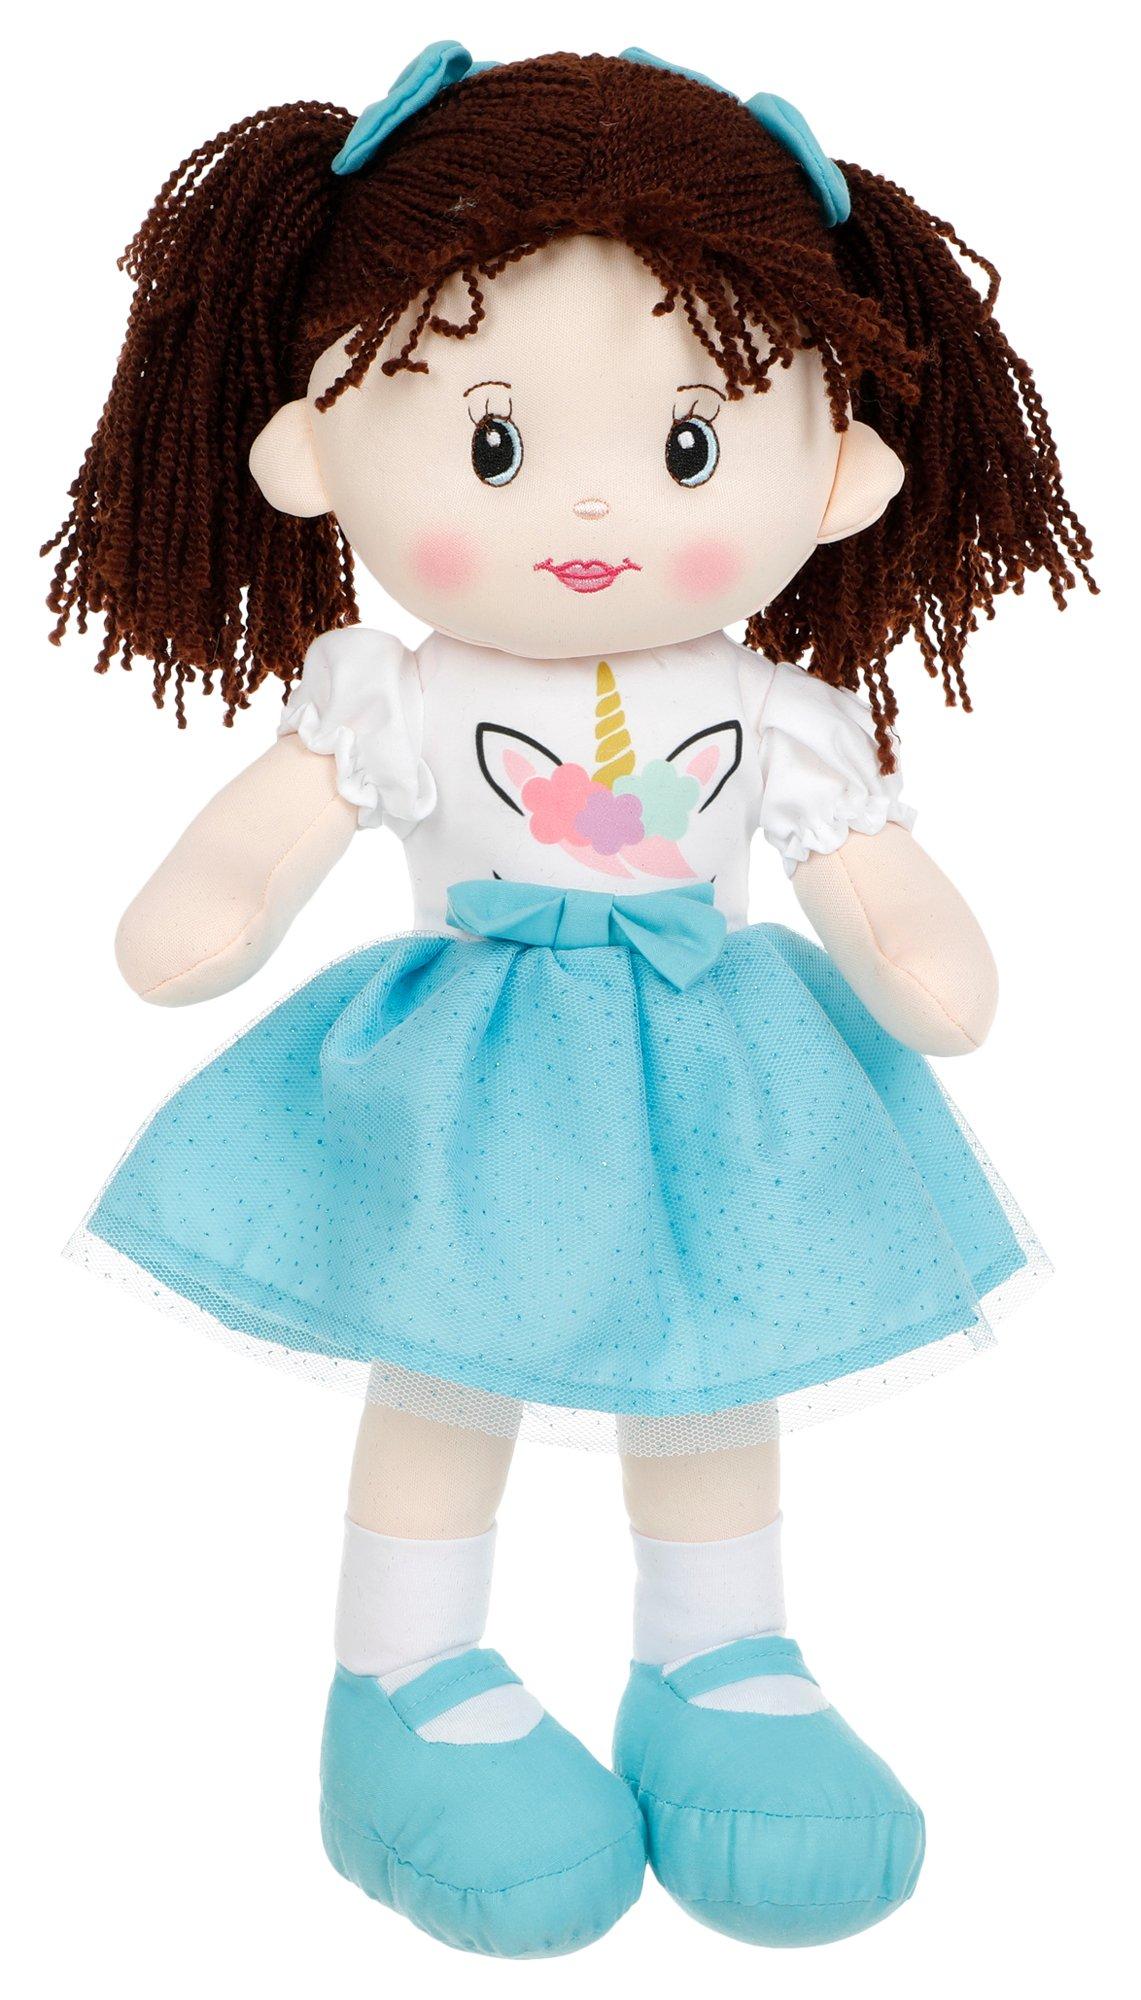 Fanny Sweet Heart Plush Doll